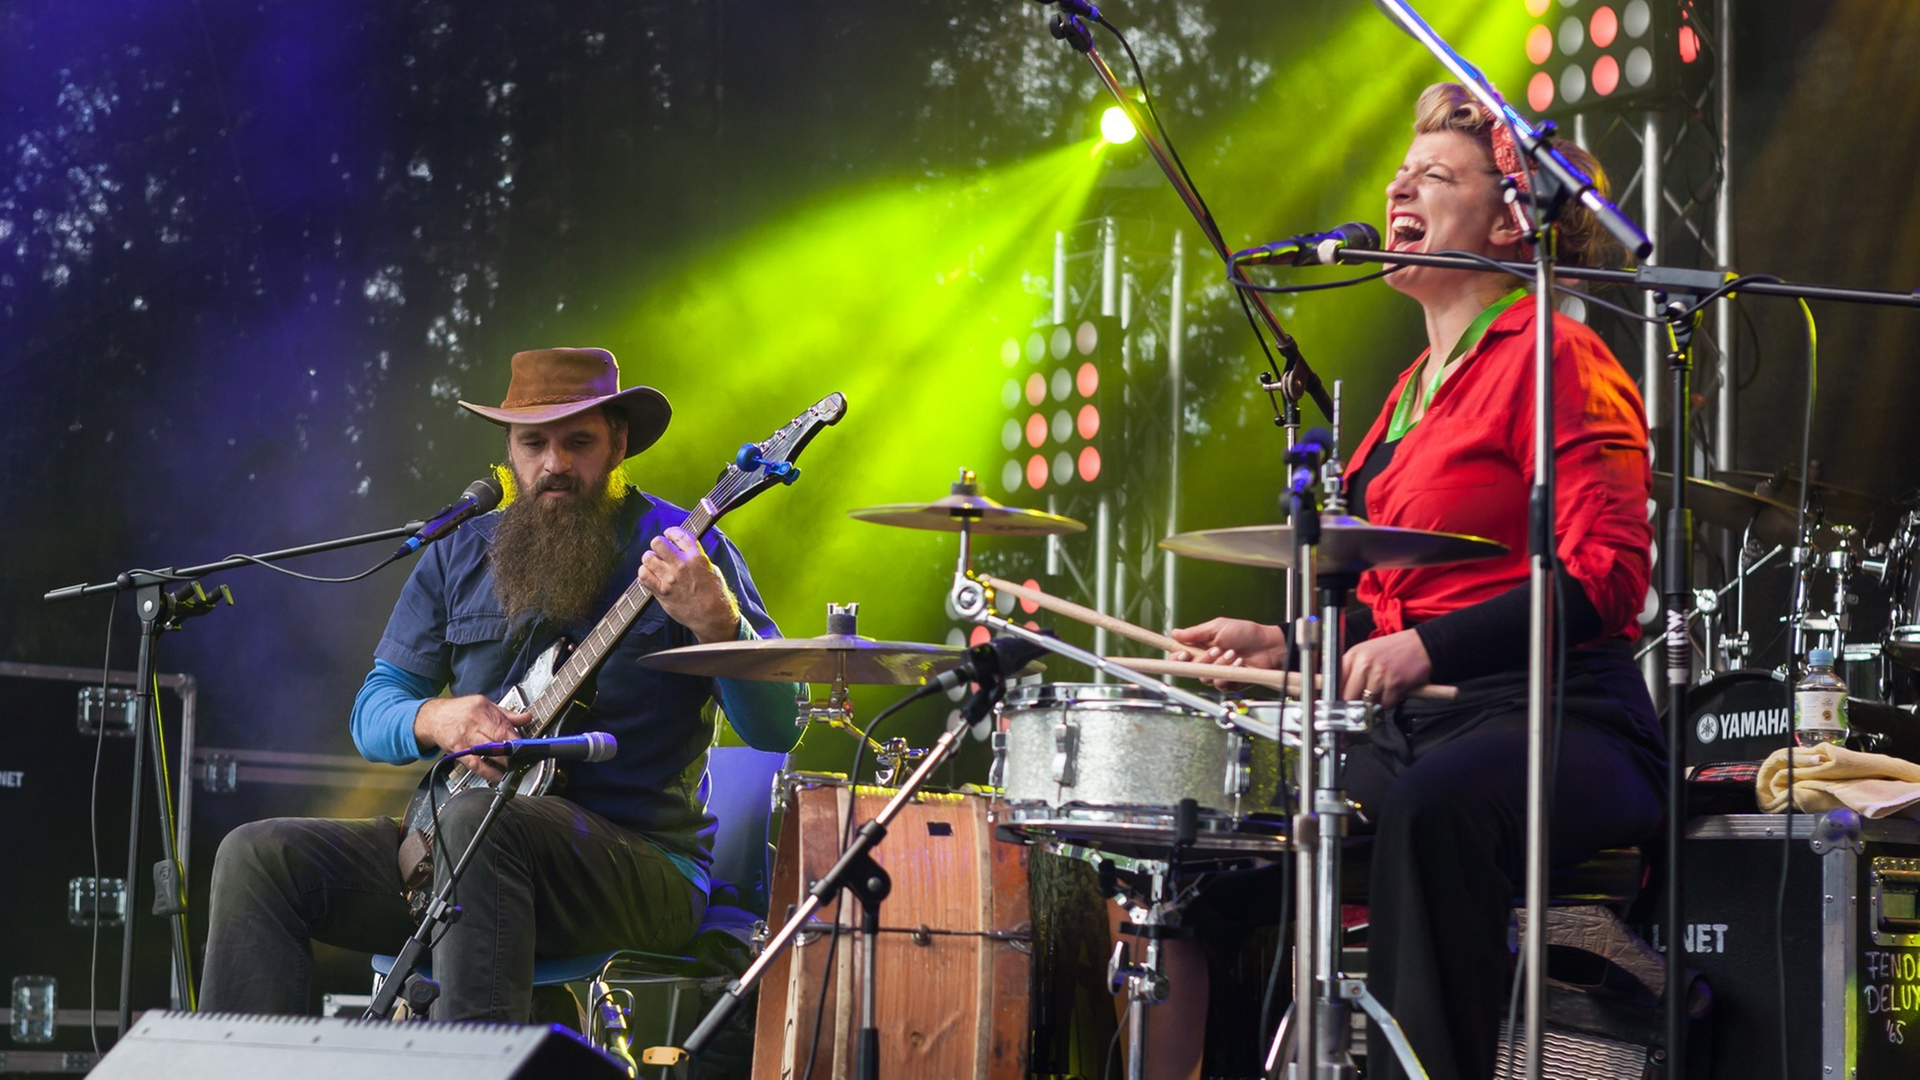 Eine Frau in roter Bluse spielt Schlagzeug und singt. Neben ihr sitzt ein Mann und spielt Gitarre.